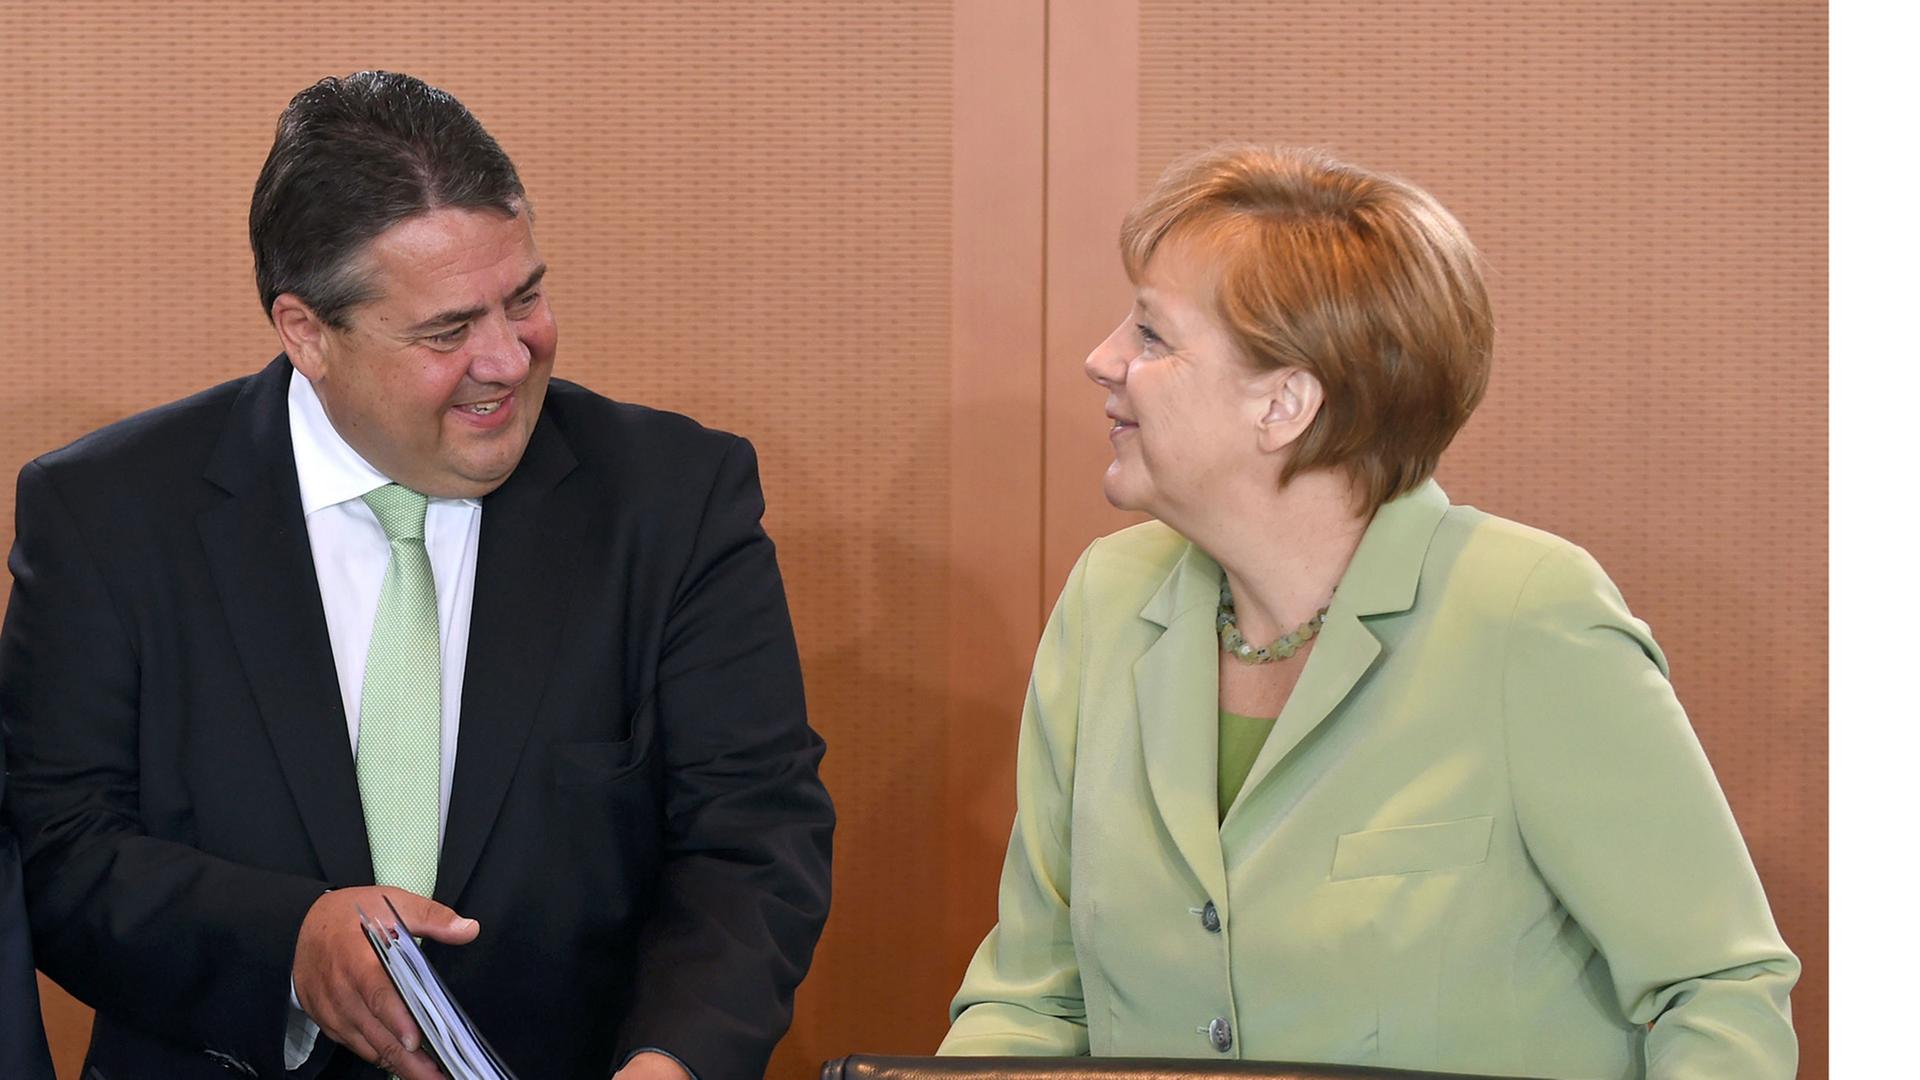 Die Kanzlerin unterhält sich am 18.06.2014 zu Beginn der Kabinettssitzung mit Wirtschaftsminister Gabriel. Beide lachen.